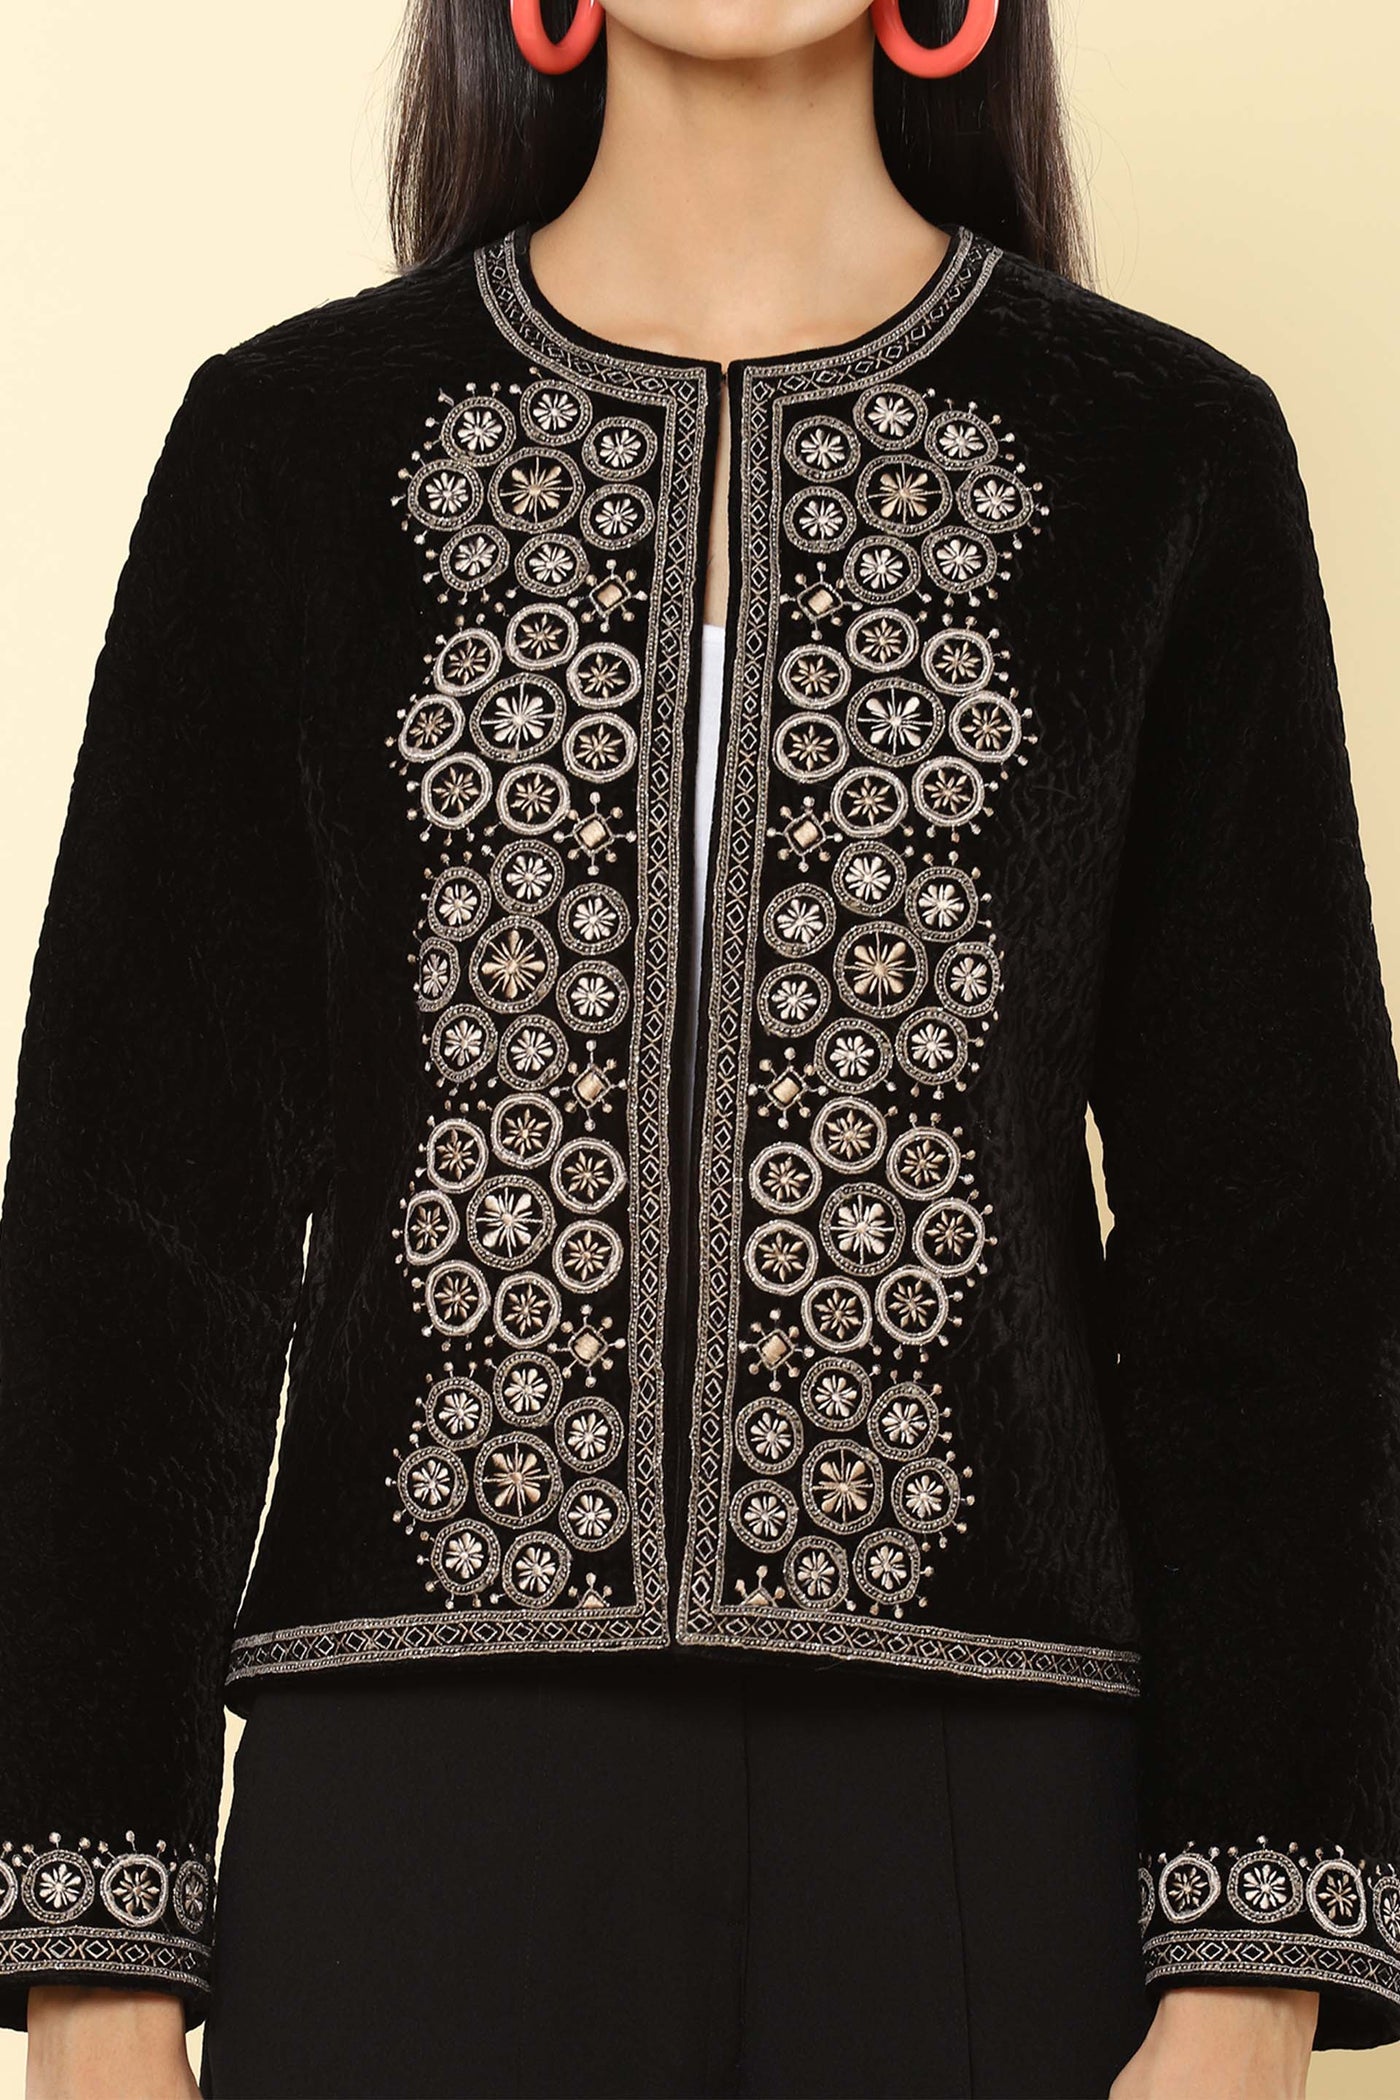 label ritu kumar Black Floral Embroidered Jacket western indian designer wear online shopping melange singapore